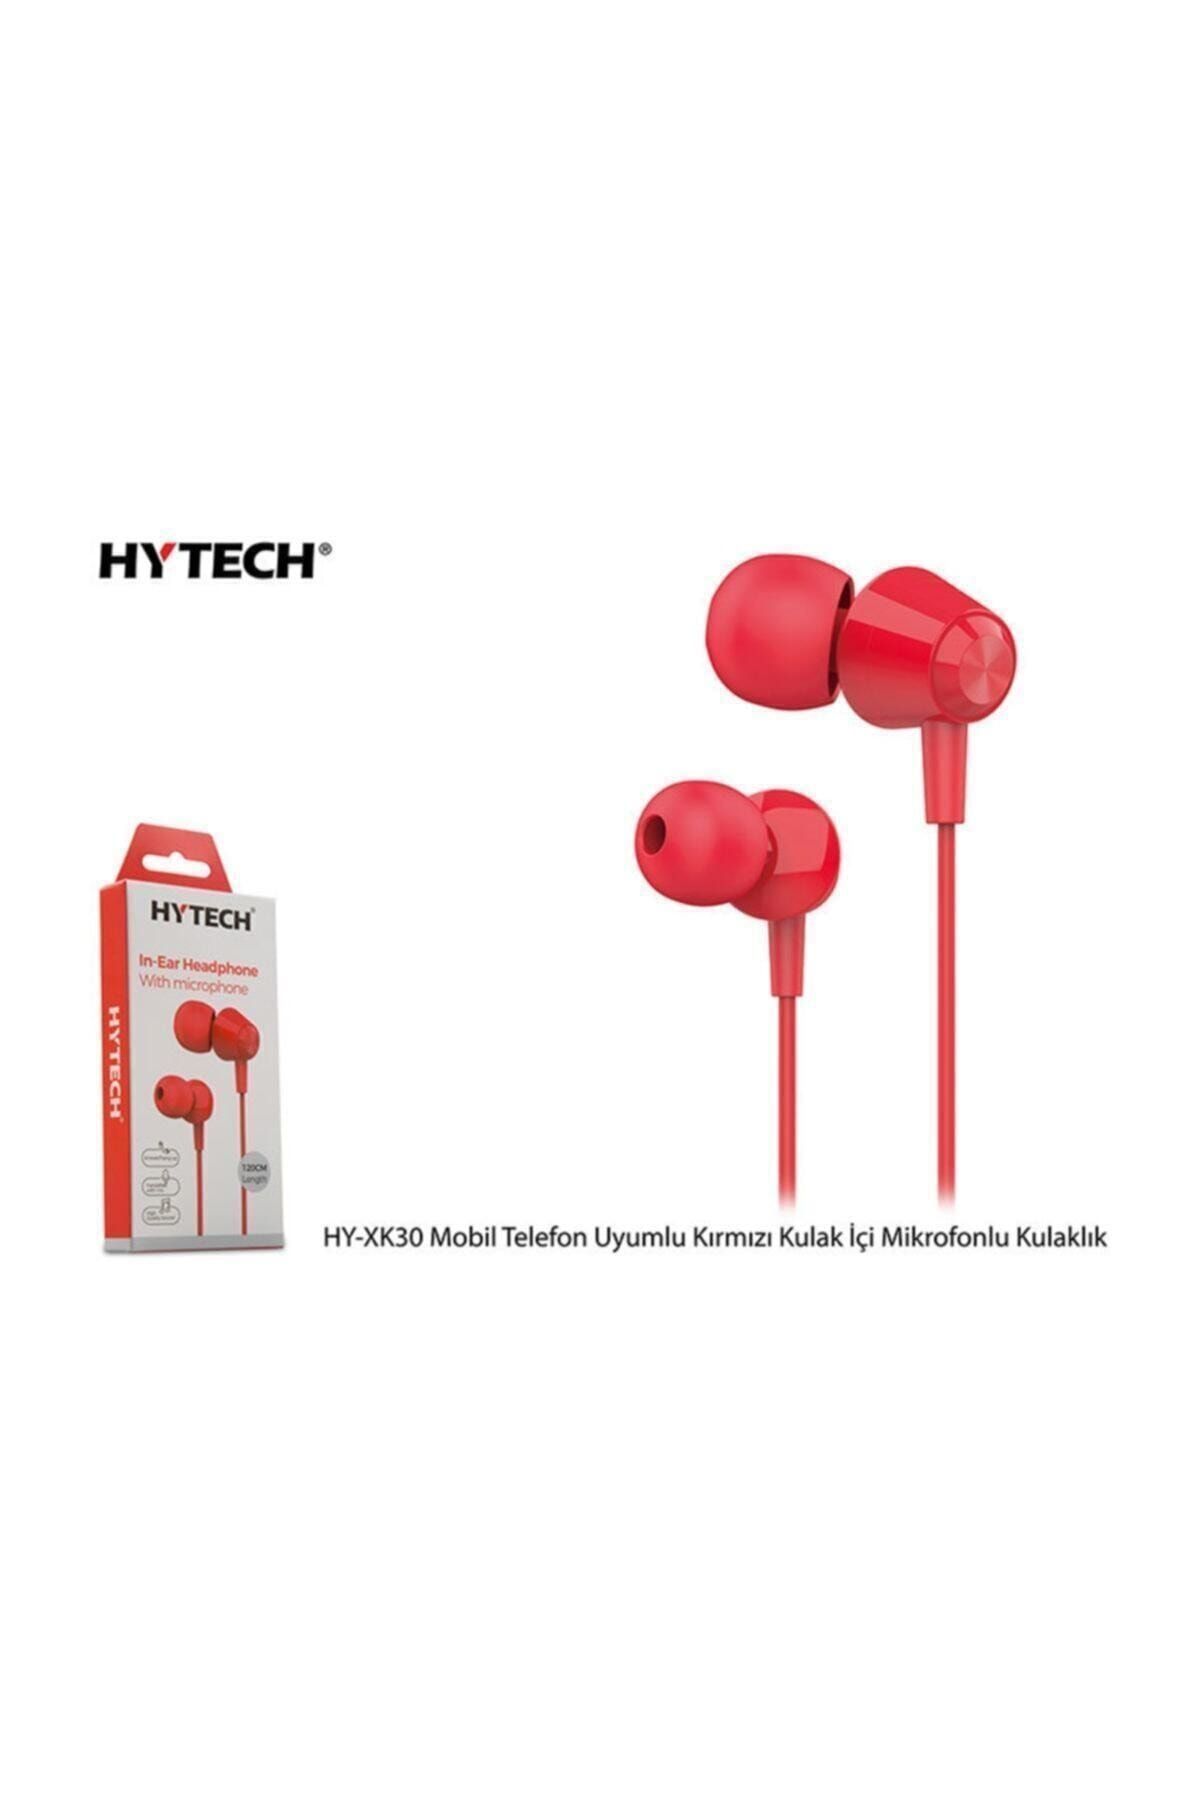 Hytech Hy-xk30 Mobil Telefon Uyumlu Kırmızı Kulak Içi Mikrofonlu Kulaklık